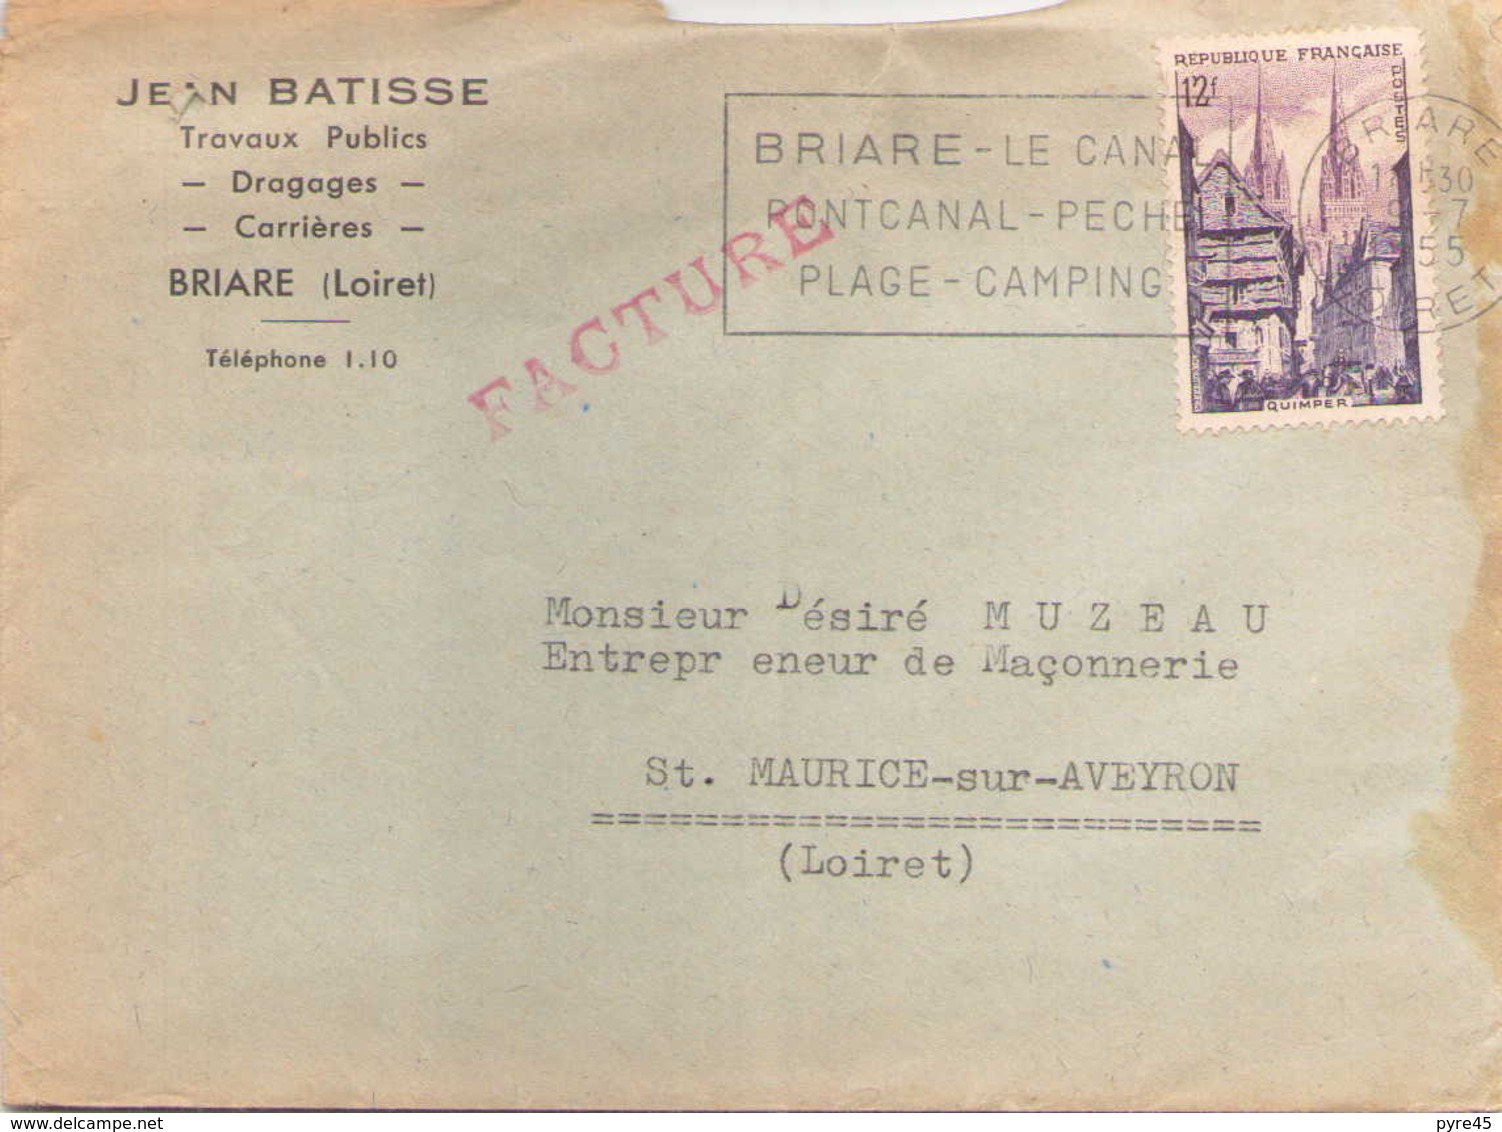 FRANCE ENVELOPPE DU 9 JUILLET 1955 DE BRIARE POUR SAINT MAURICE SUR AVEYRON EN TETE JEAN BATISSE TRAVAUX PUBLICS - Lettres & Documents